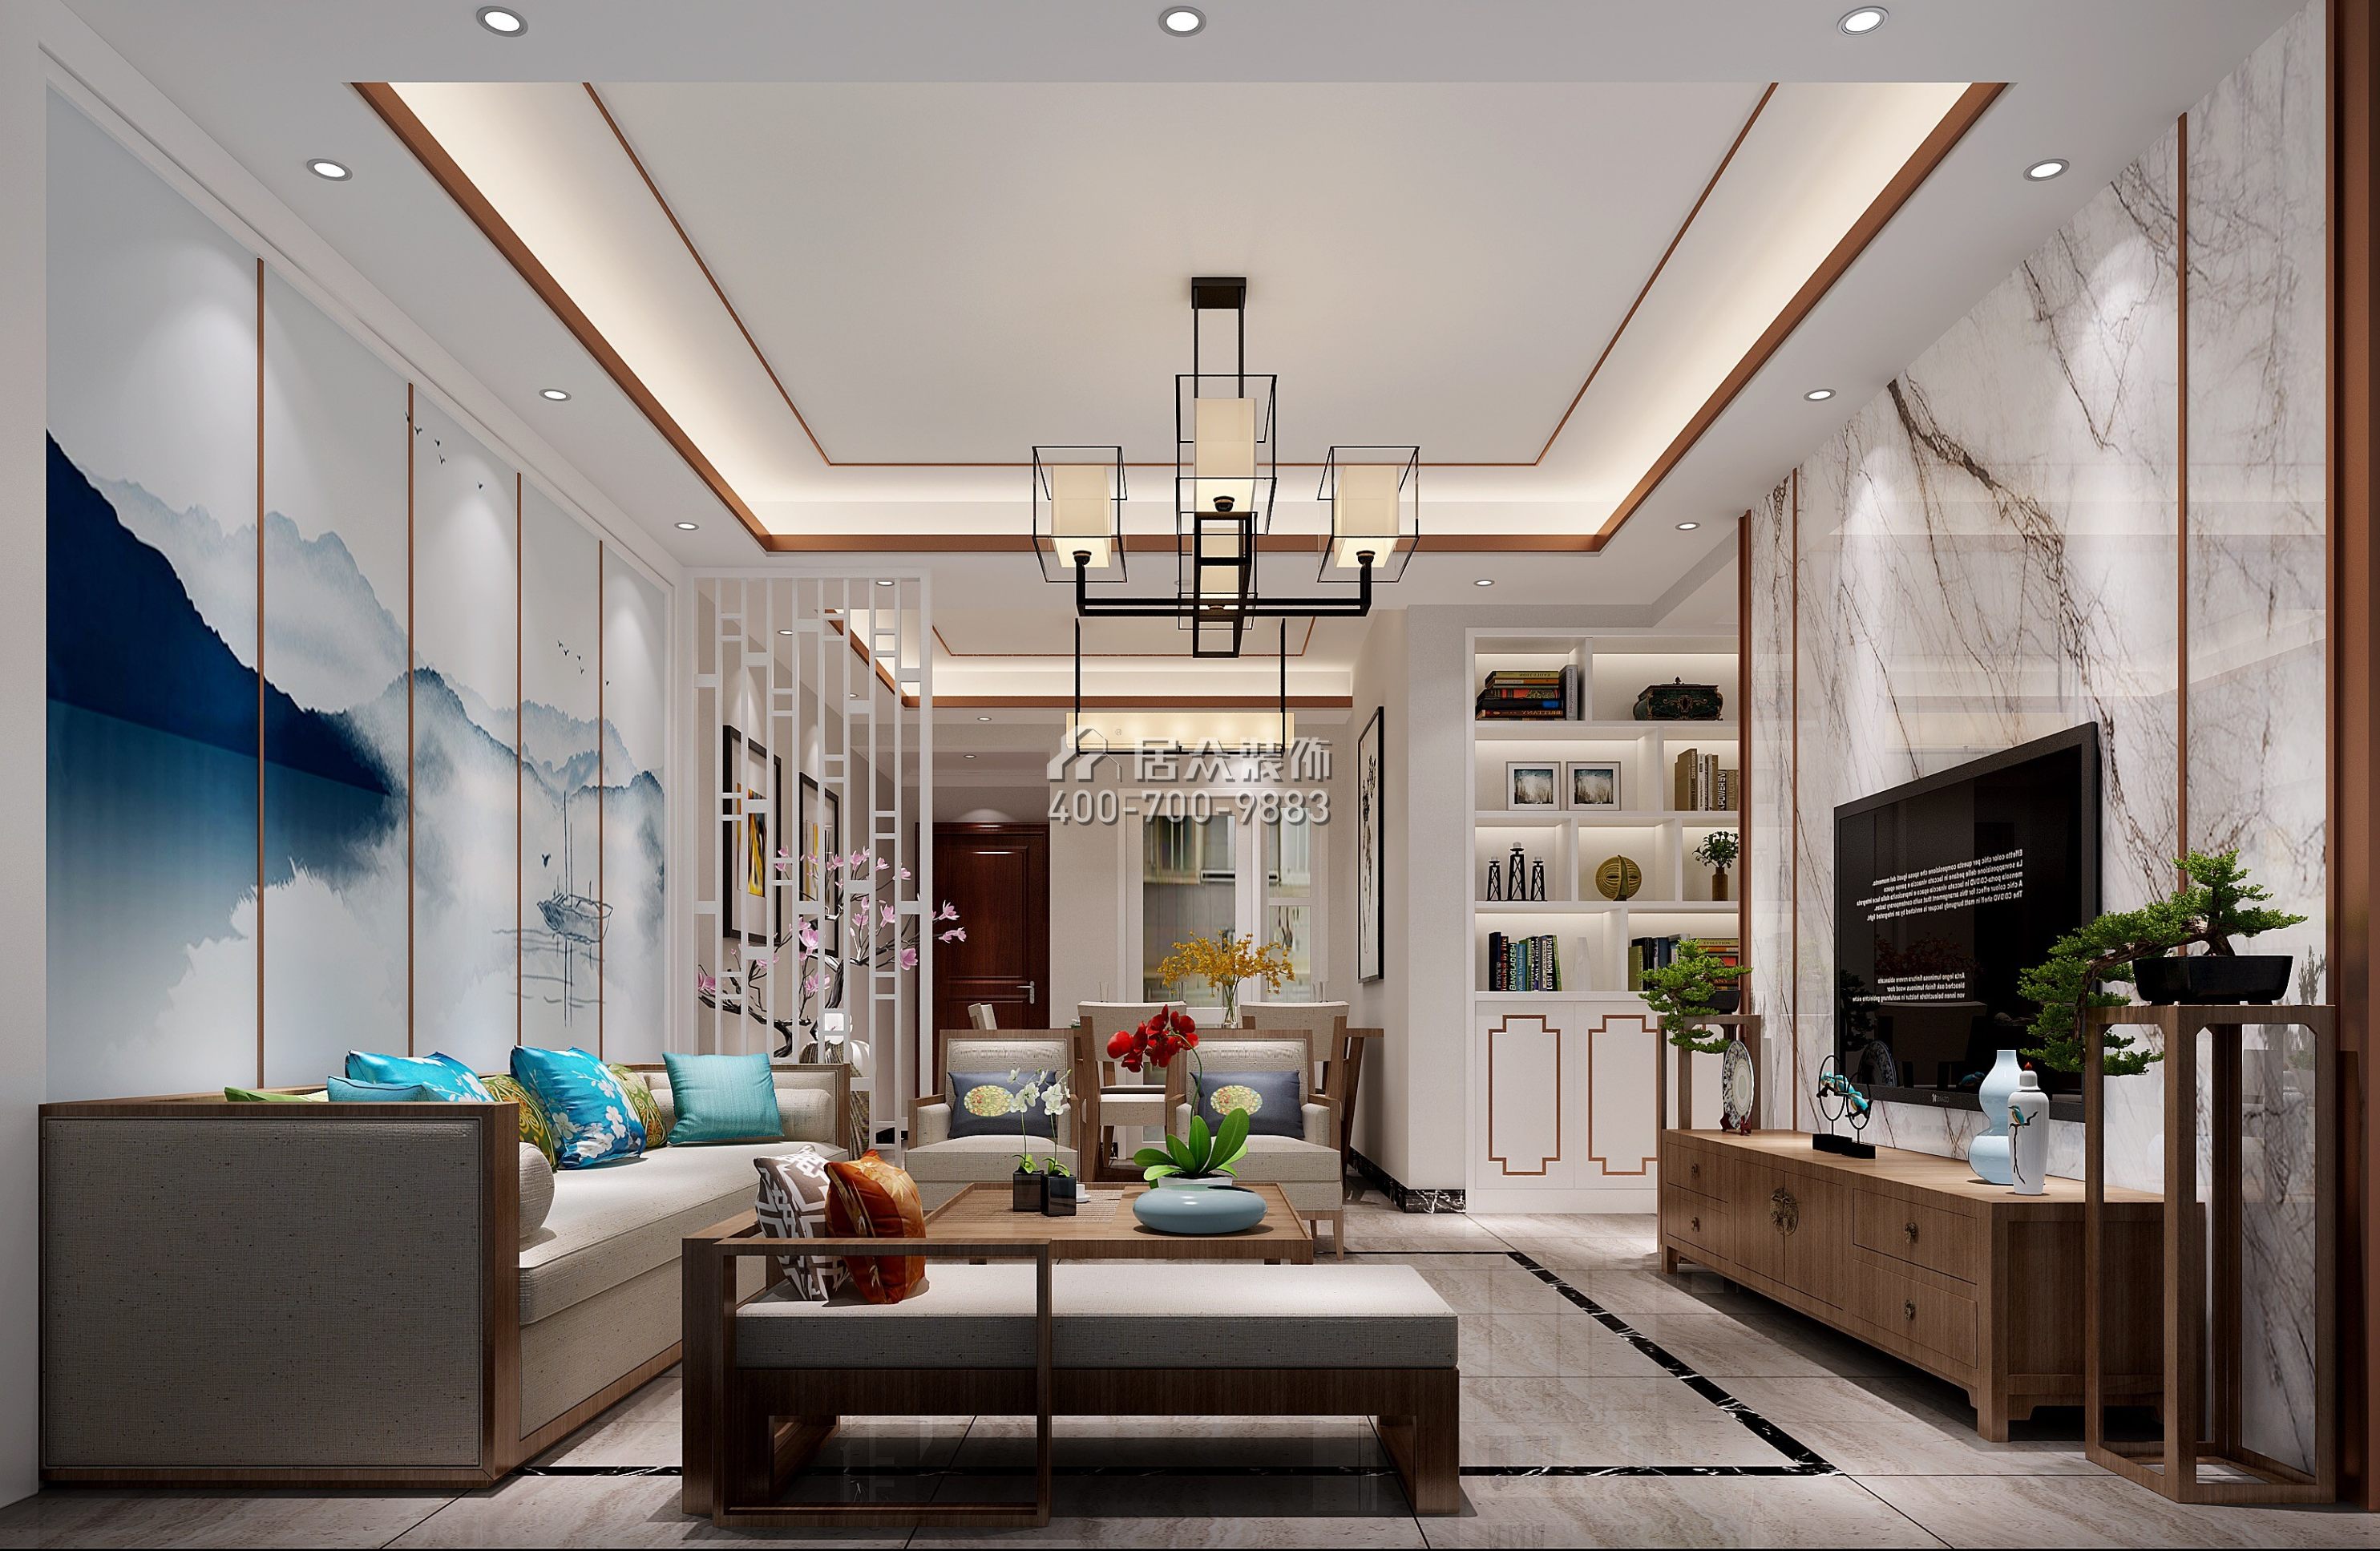 春晖国际花园120平方米中式风格平层户型客厅装修效果图